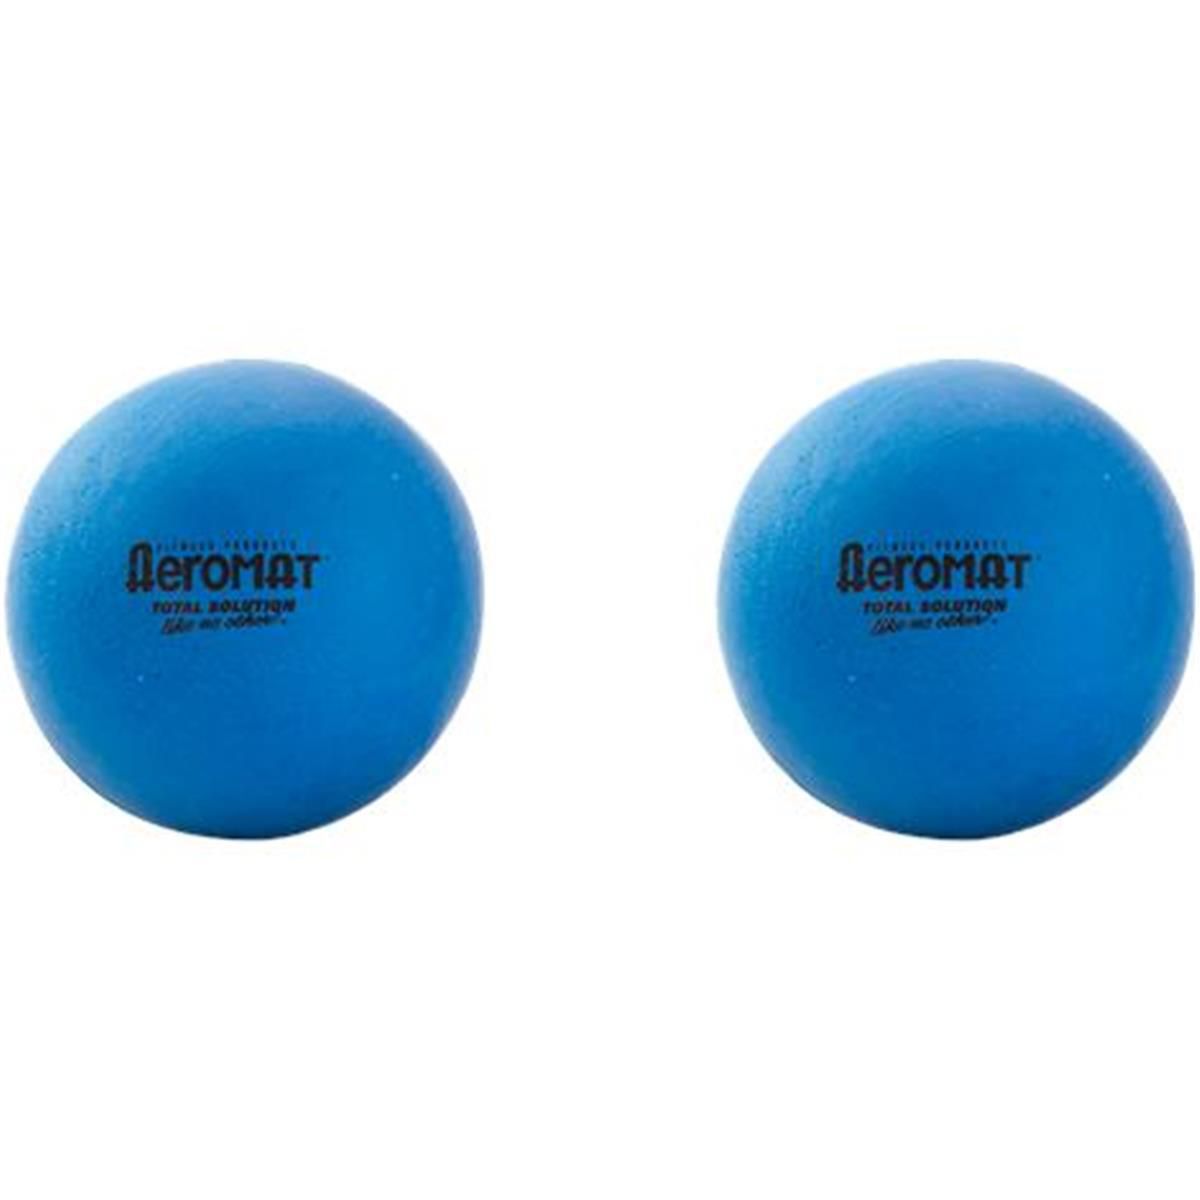 AeroMat 35310 3-дюймовый мини-жесткий массажный мяч - синий мягкий Aeromat